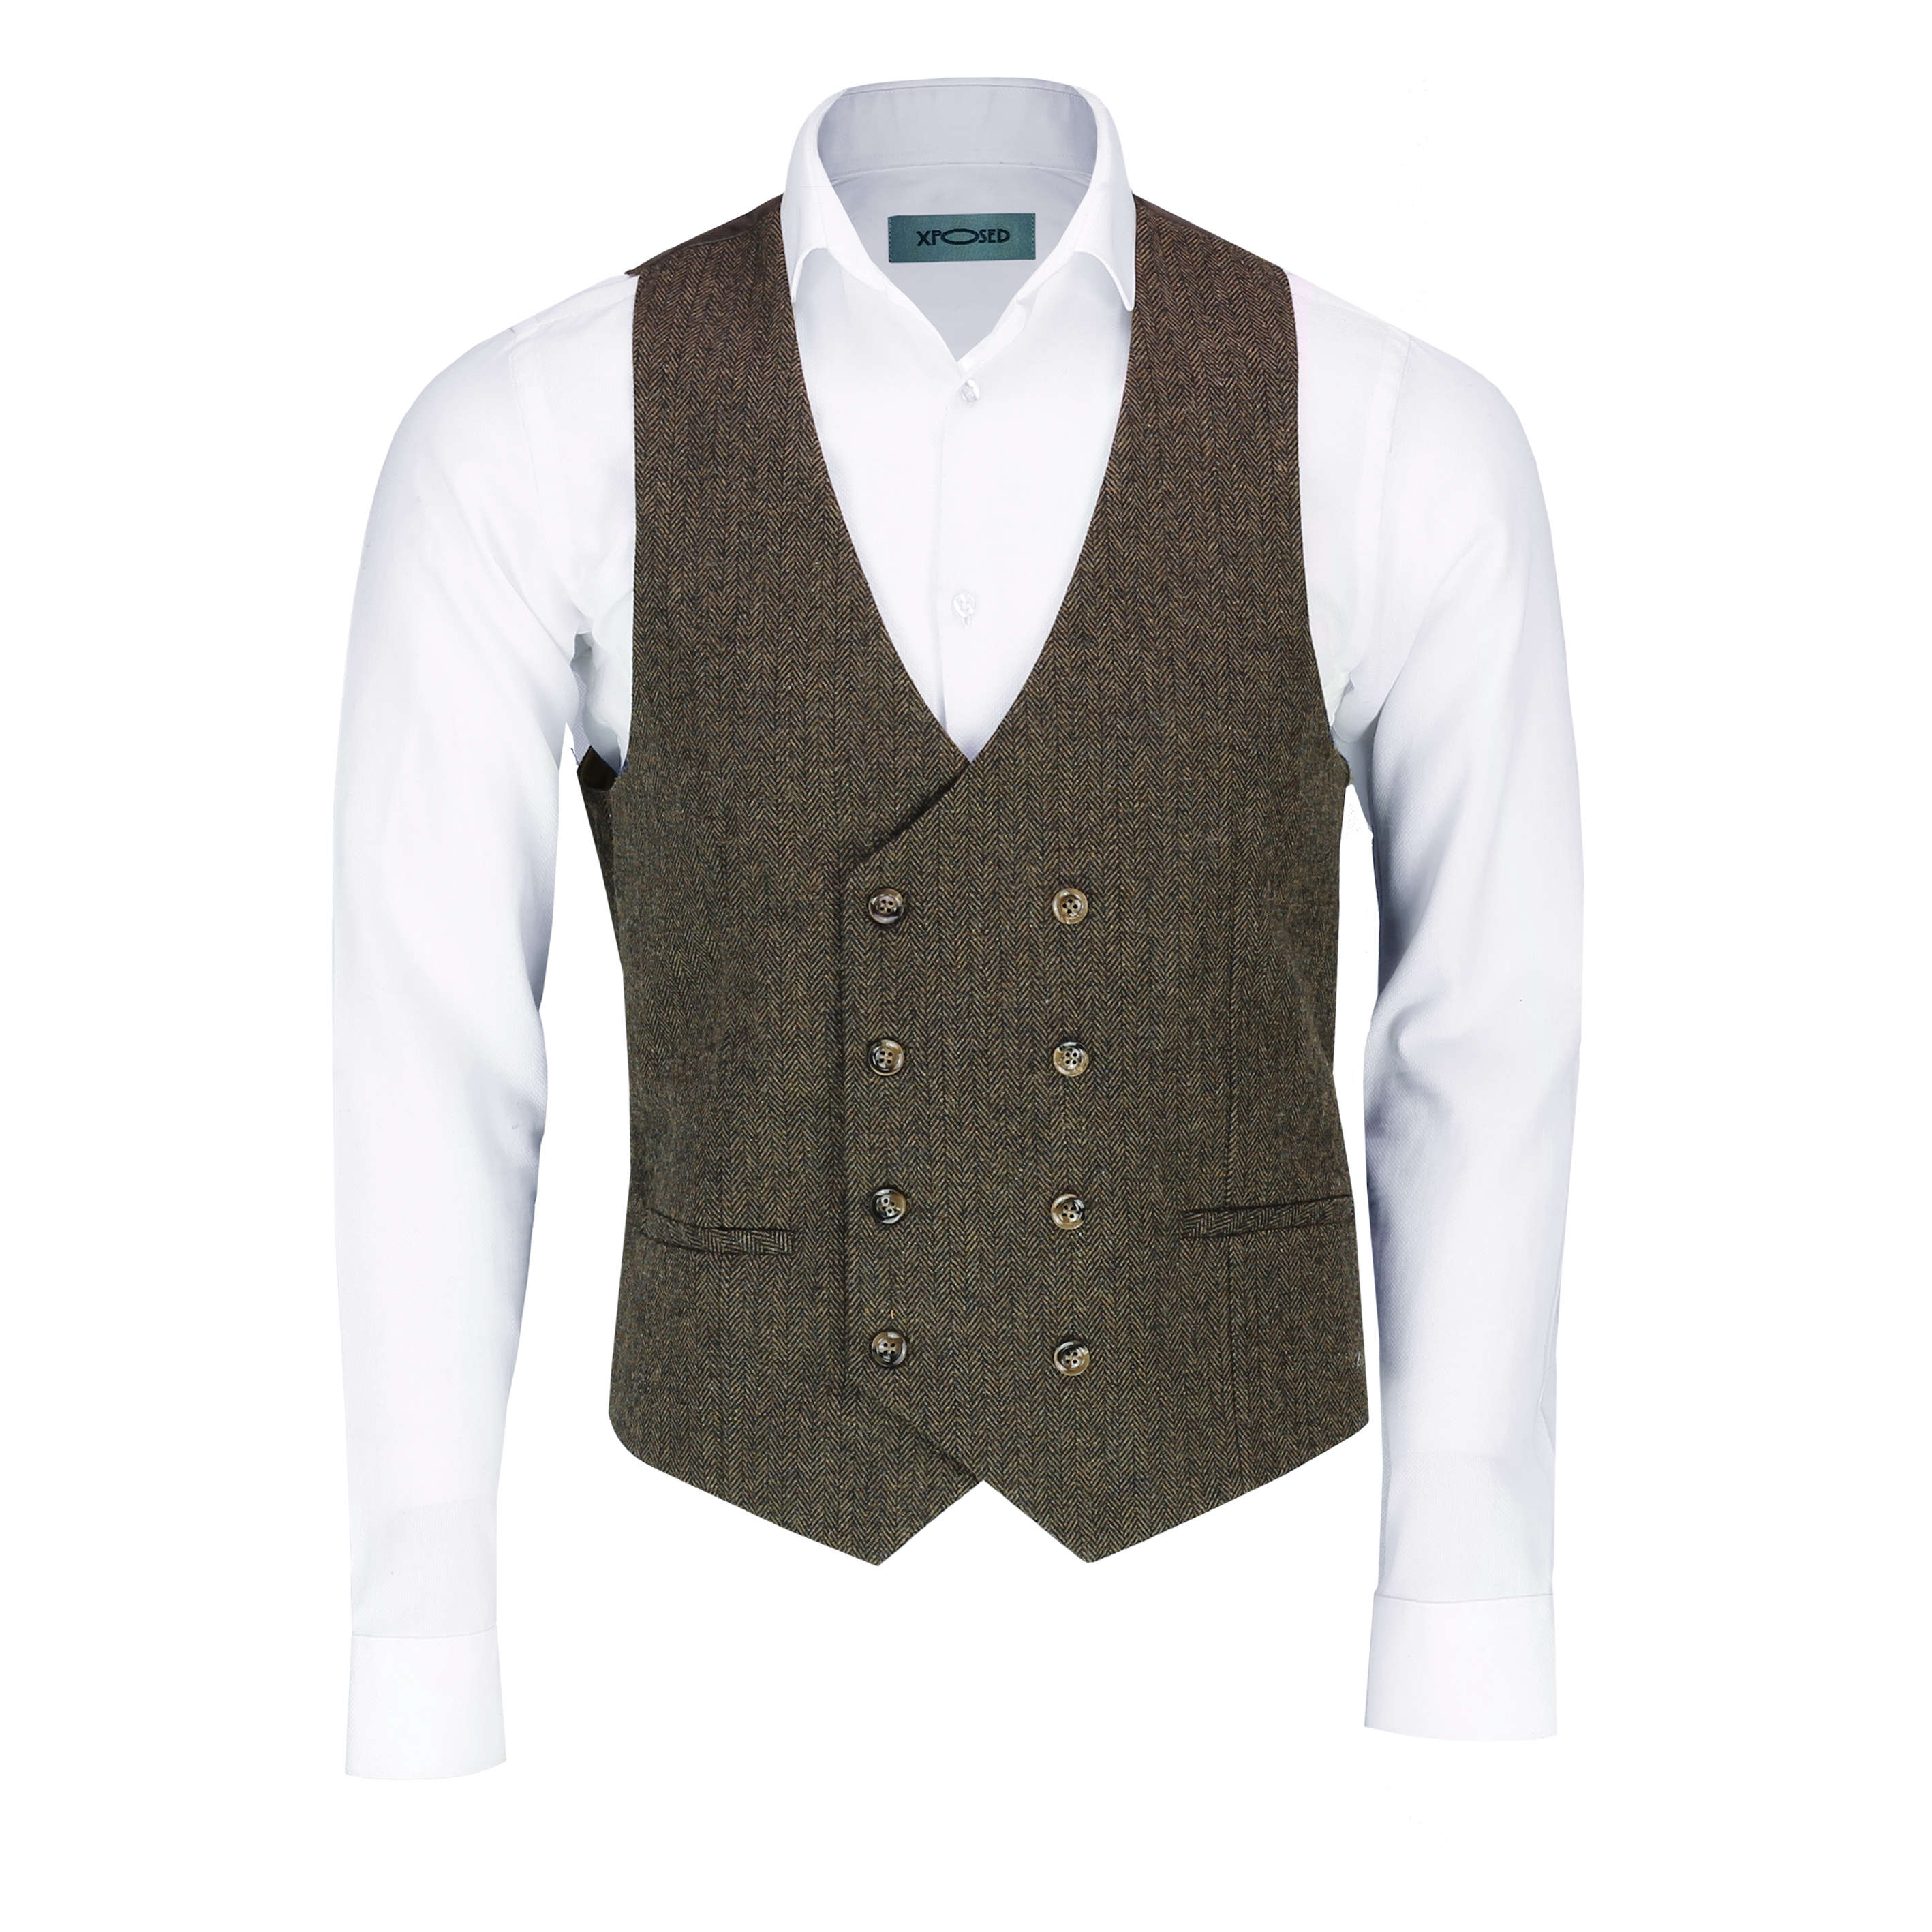 Mens Double Breasted Herringbone Tweed Peaky Blinders Vintage Check Waistcoat